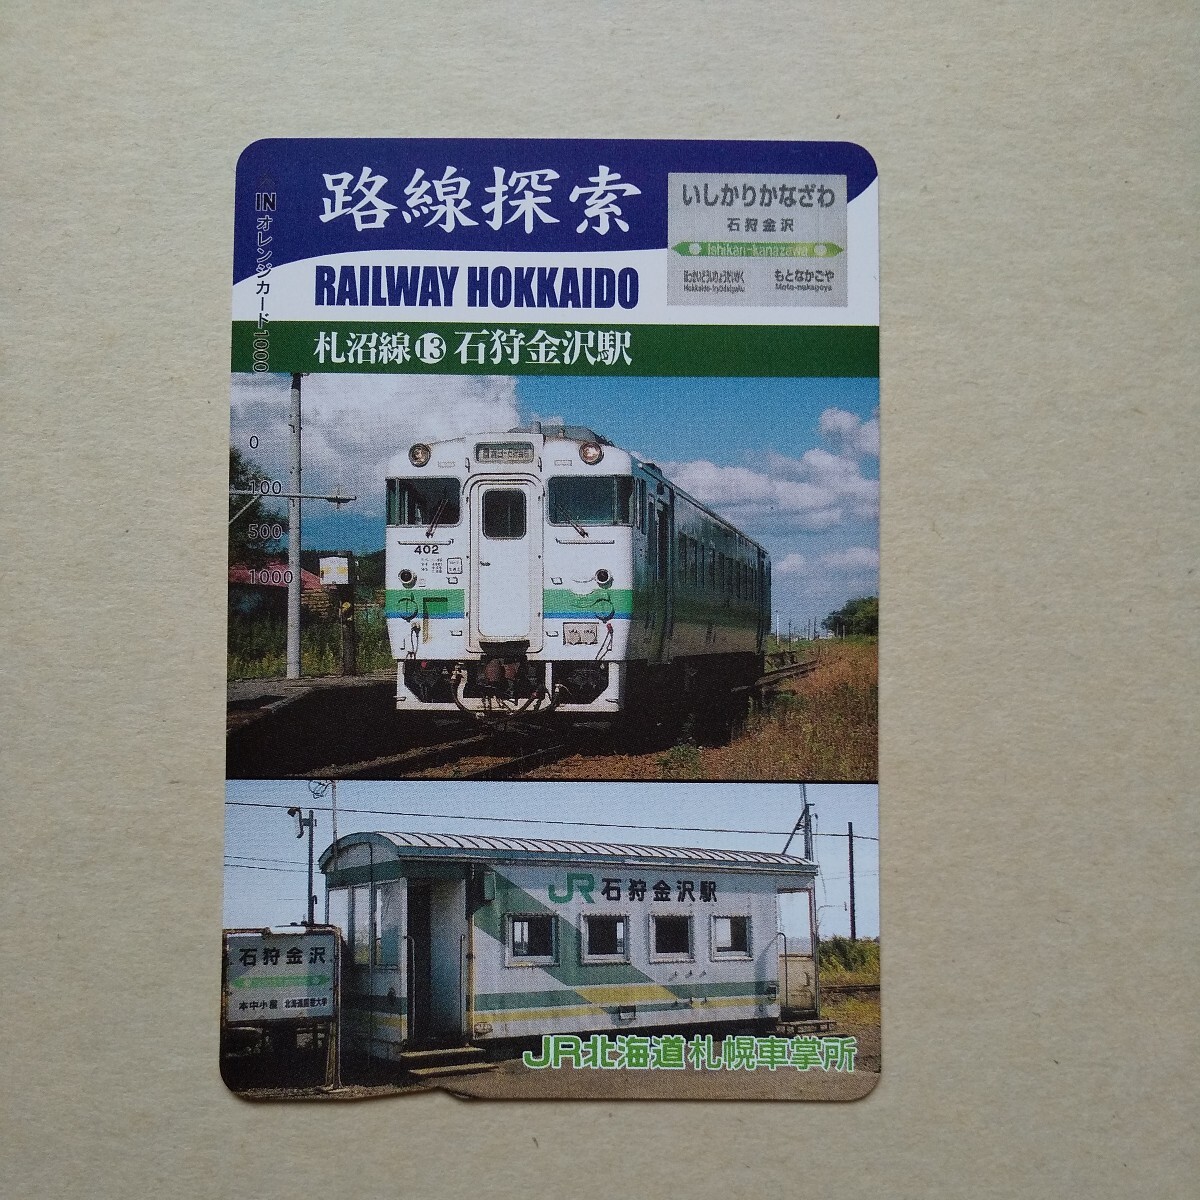 * ценный товар * маршрут ... болото линия ⑬ камень . Kanazawa станция очень красивый товар Orange Card не продается образец товар станция конструкция внутри выставленный товар античный 